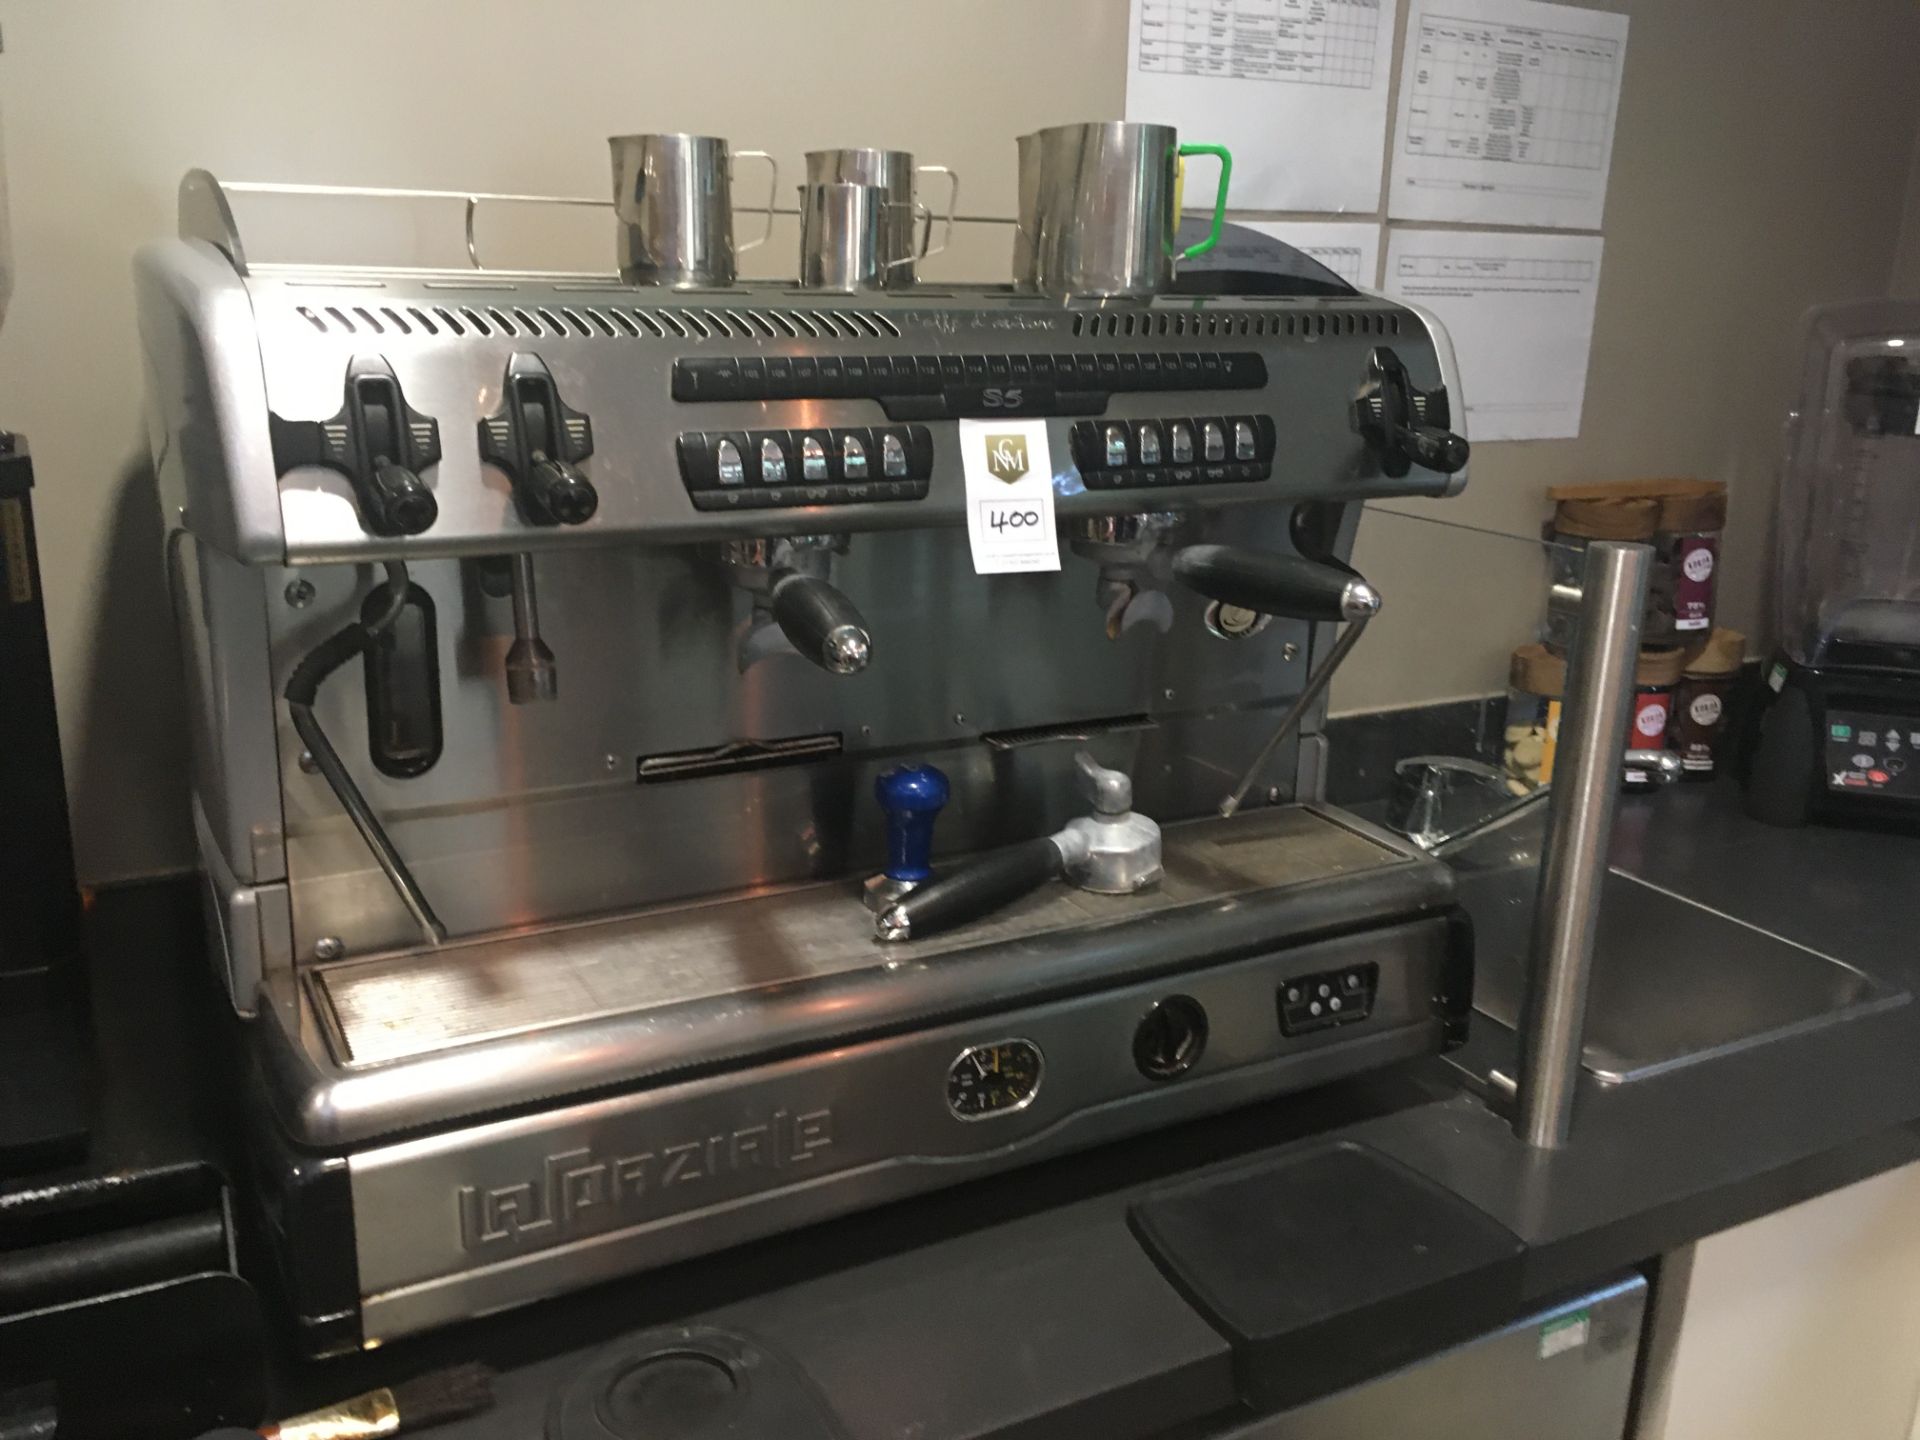 La Spaziale Caffe D'autone S5 Espresso Machine